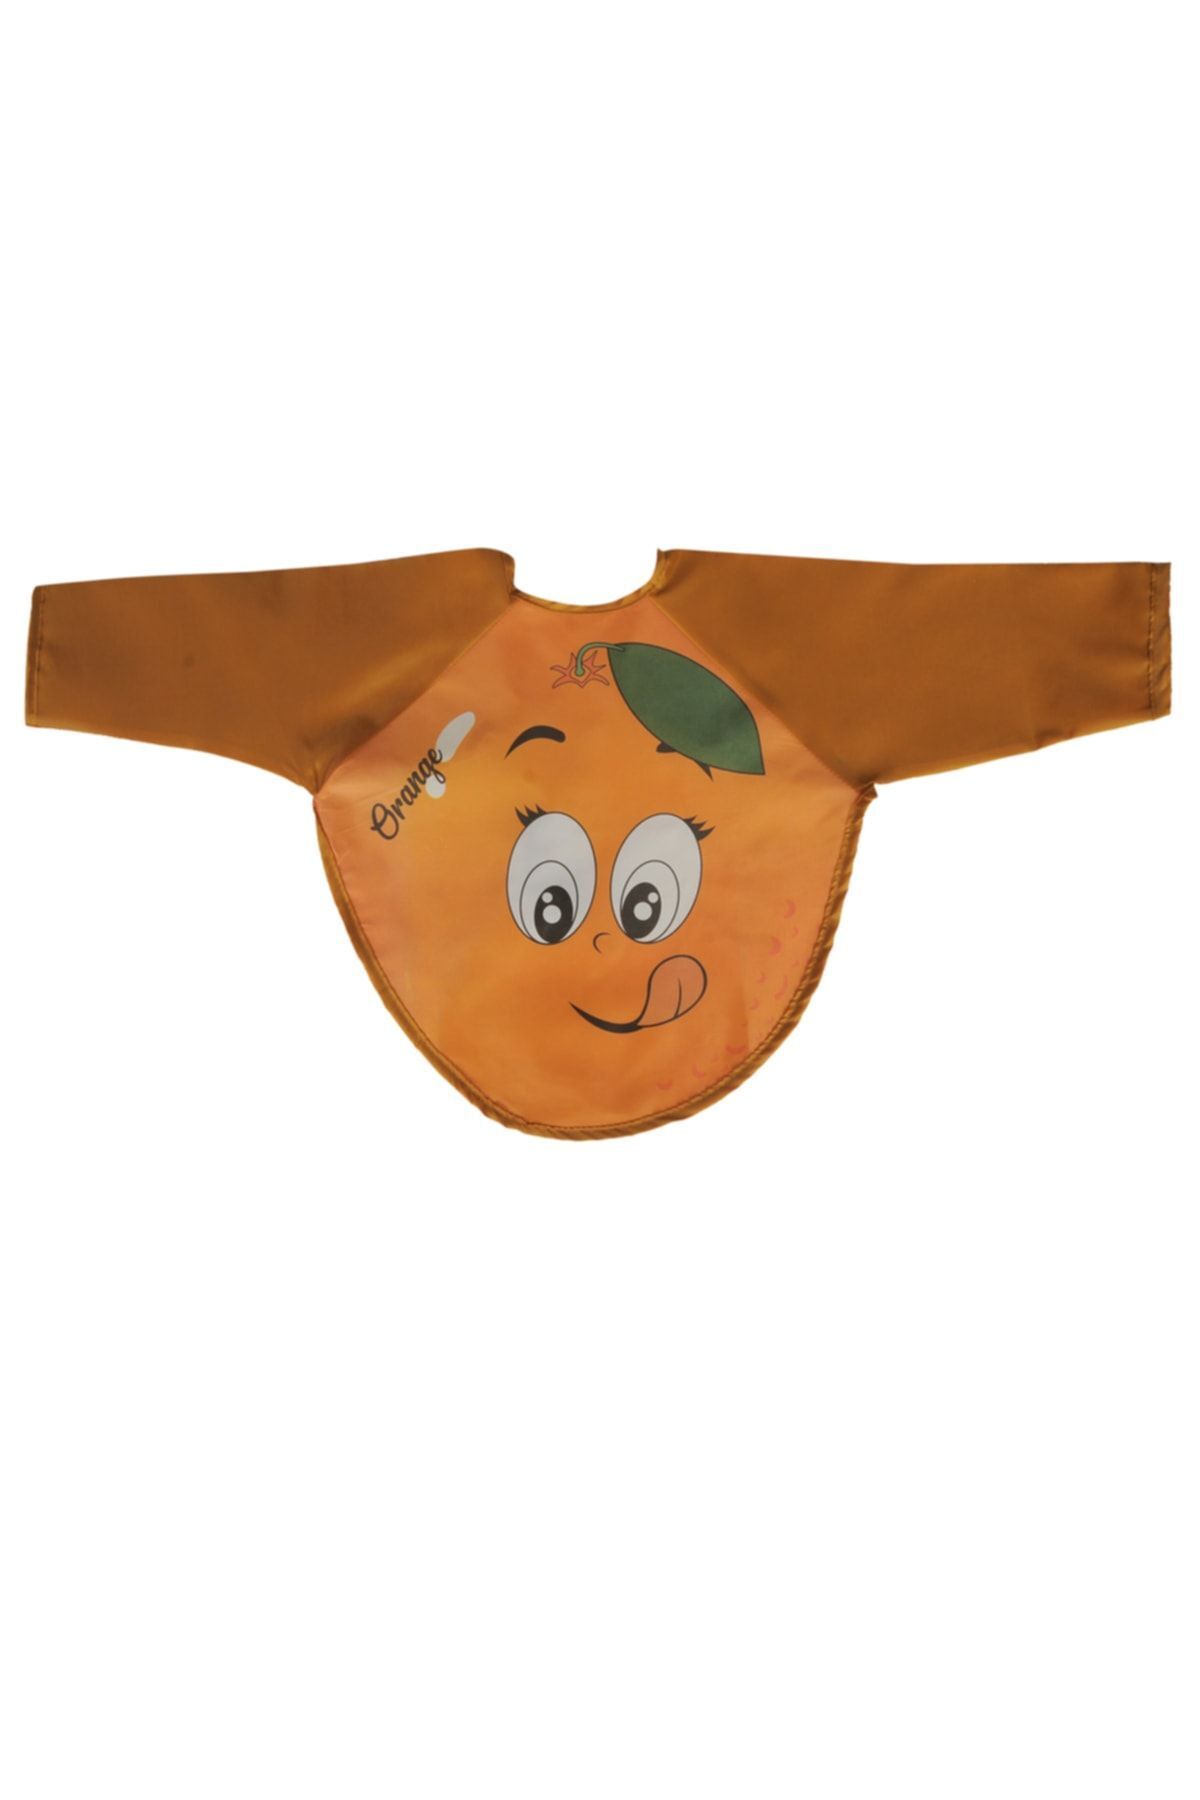 YUNUSOĞLU HOME Portakal Desenli Kollu Bebek Mama Önlüğü 6-24 Ay Arası Kullanım